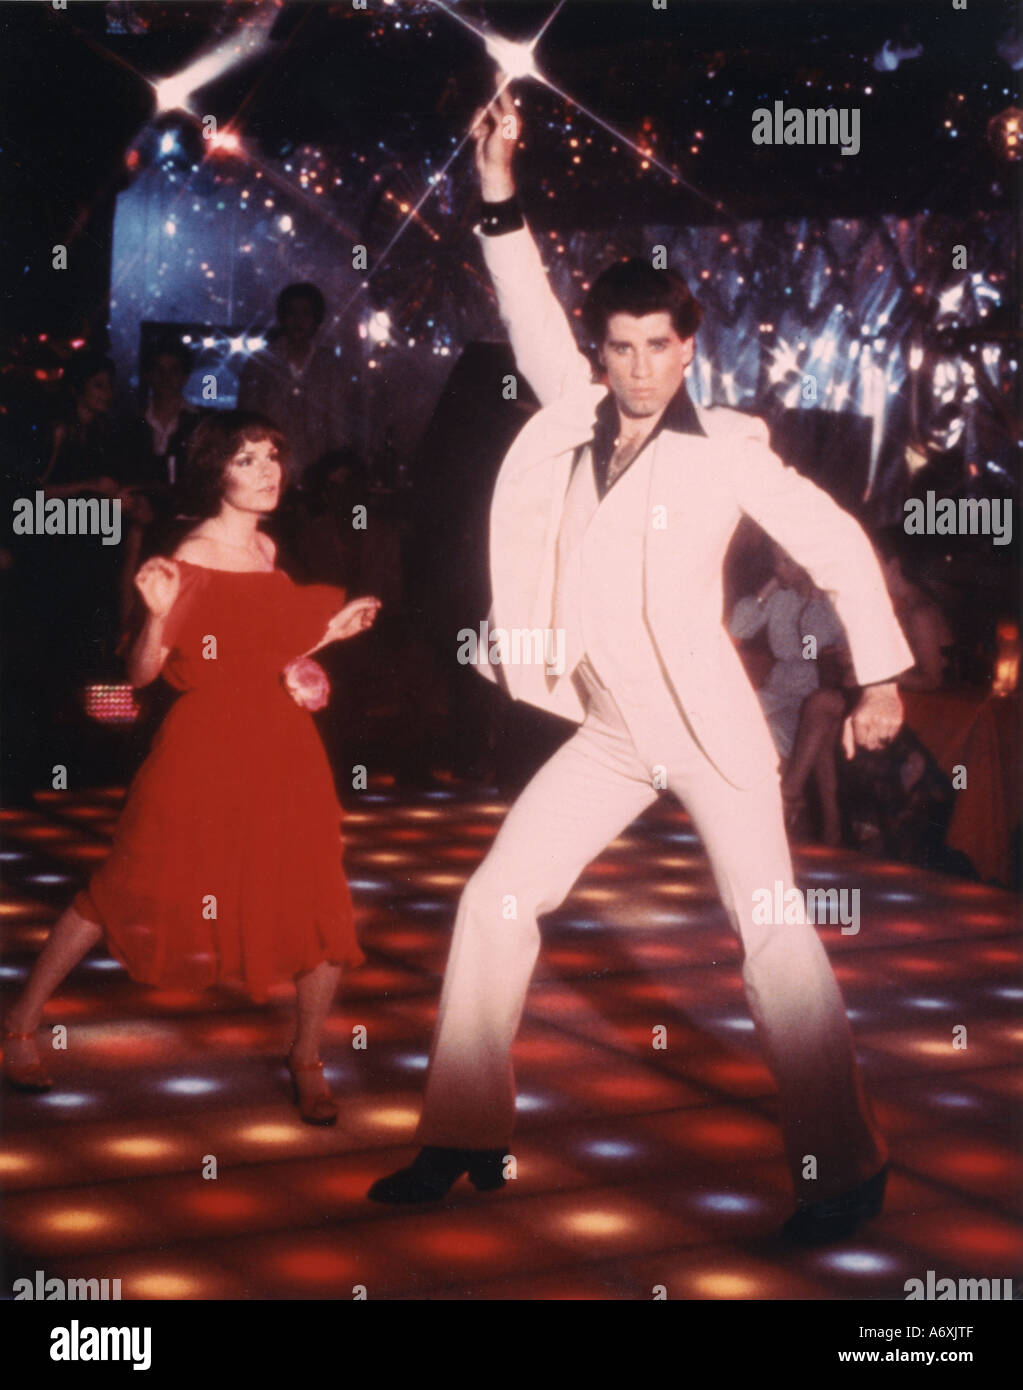 La Fièvre du samedi soir John Travolta et Karen Lynn Gorney dans le film Paramount 1977 Banque D'Images